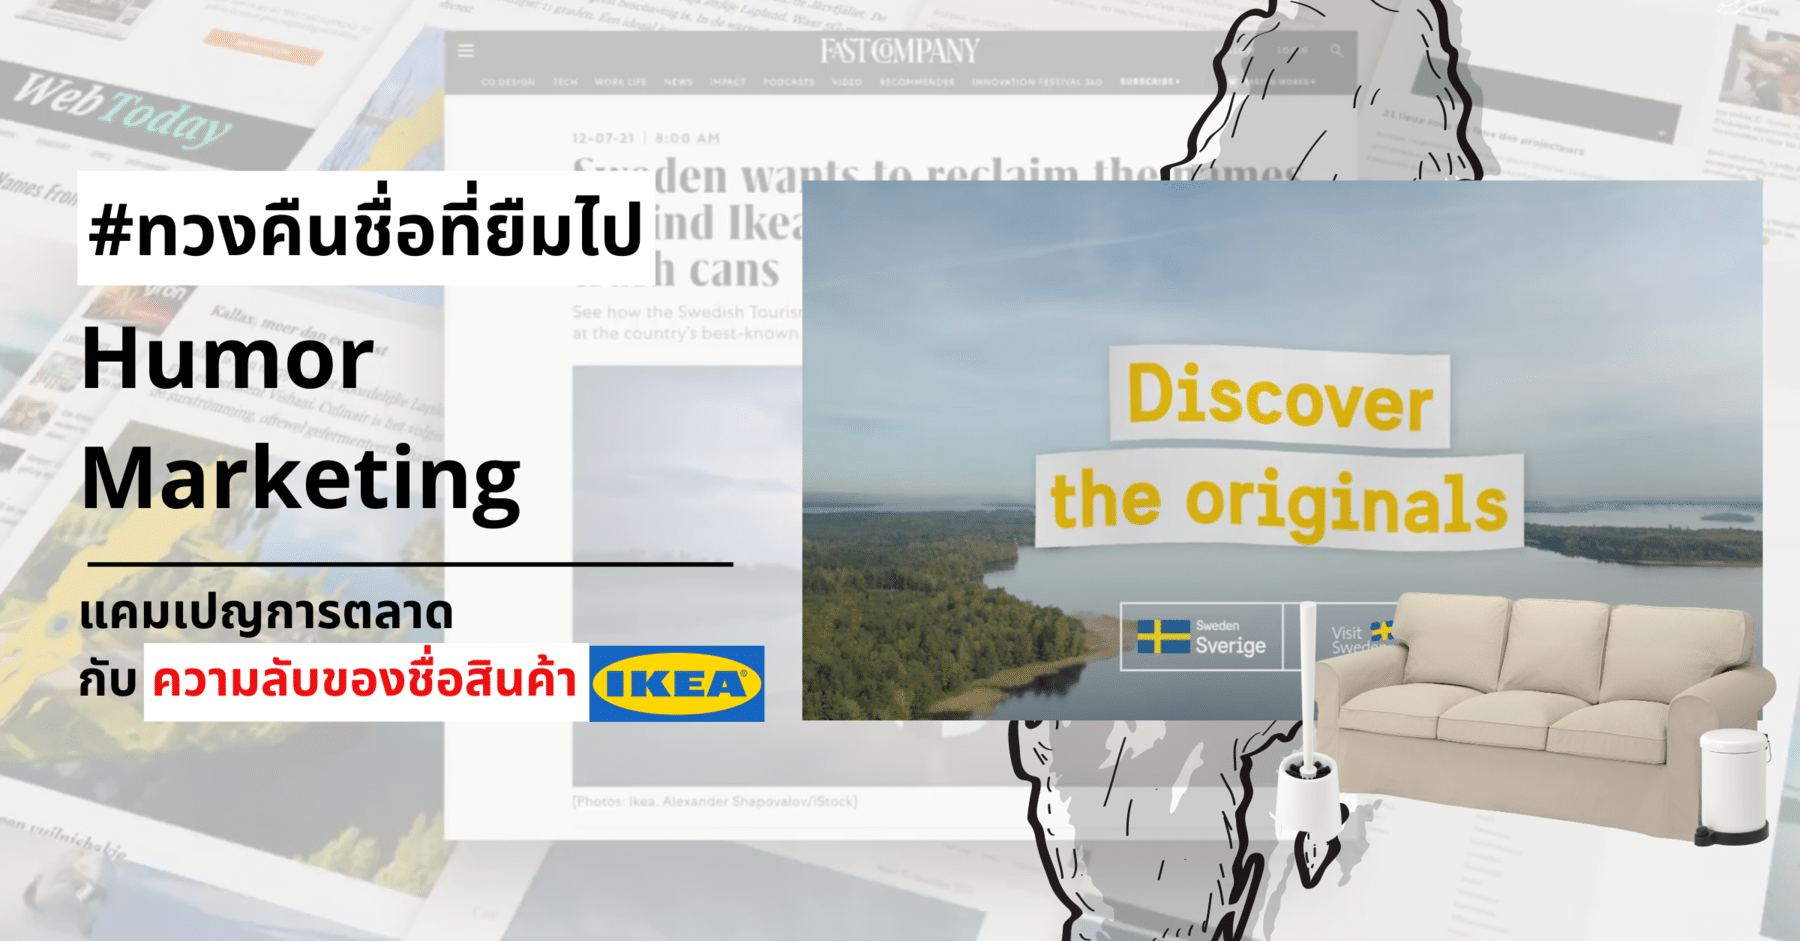 Humor Marketing แคมเปญการตลาด ที่มากับความลับของชื่อสินค้า IKEA